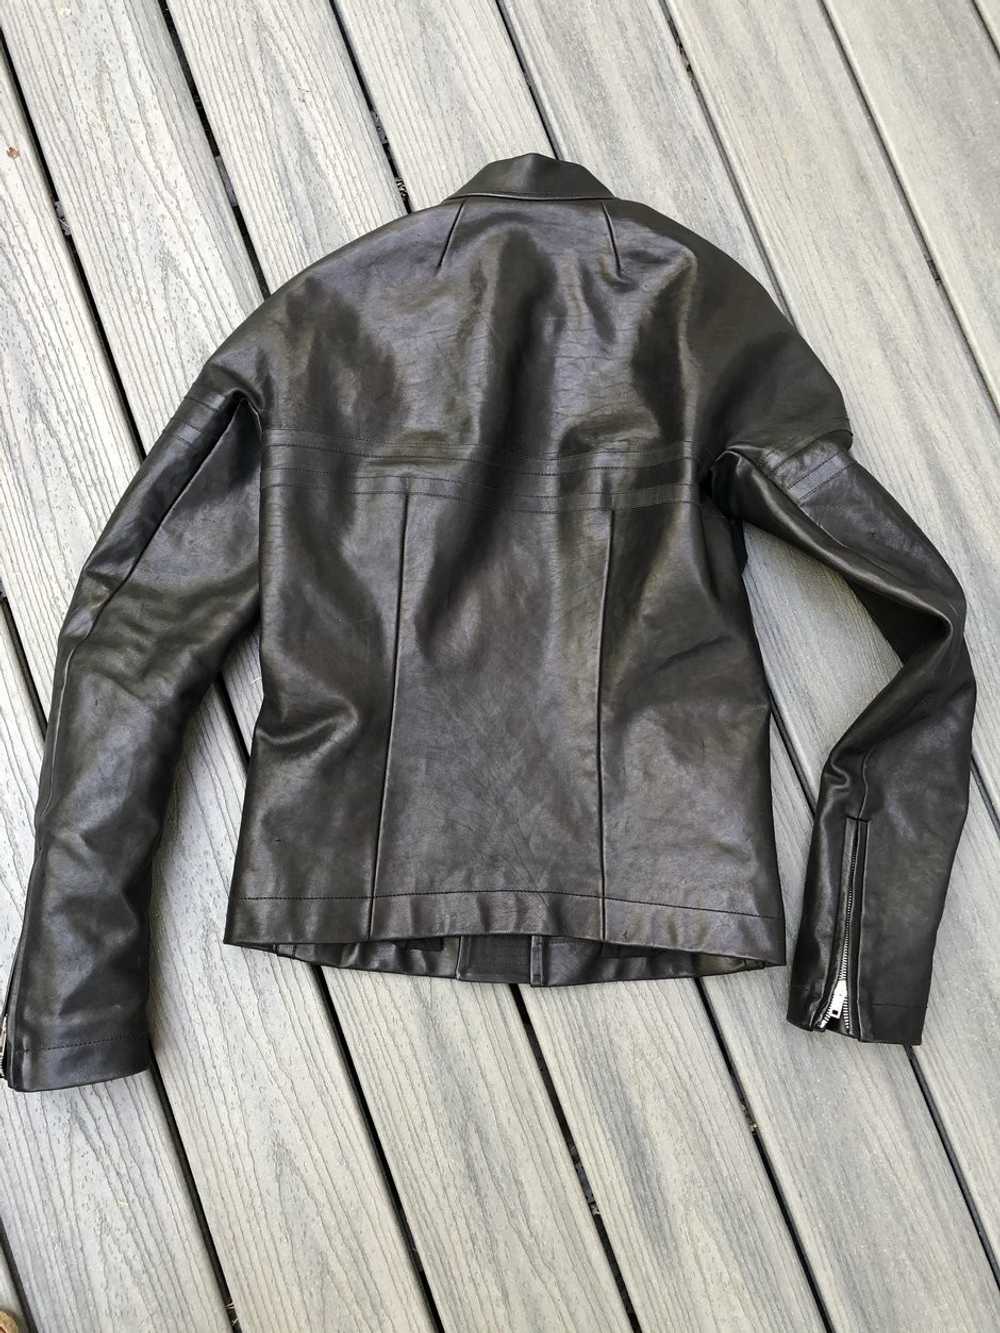 Rick Owens Mountain FW 12 Horse leather jacket - image 2